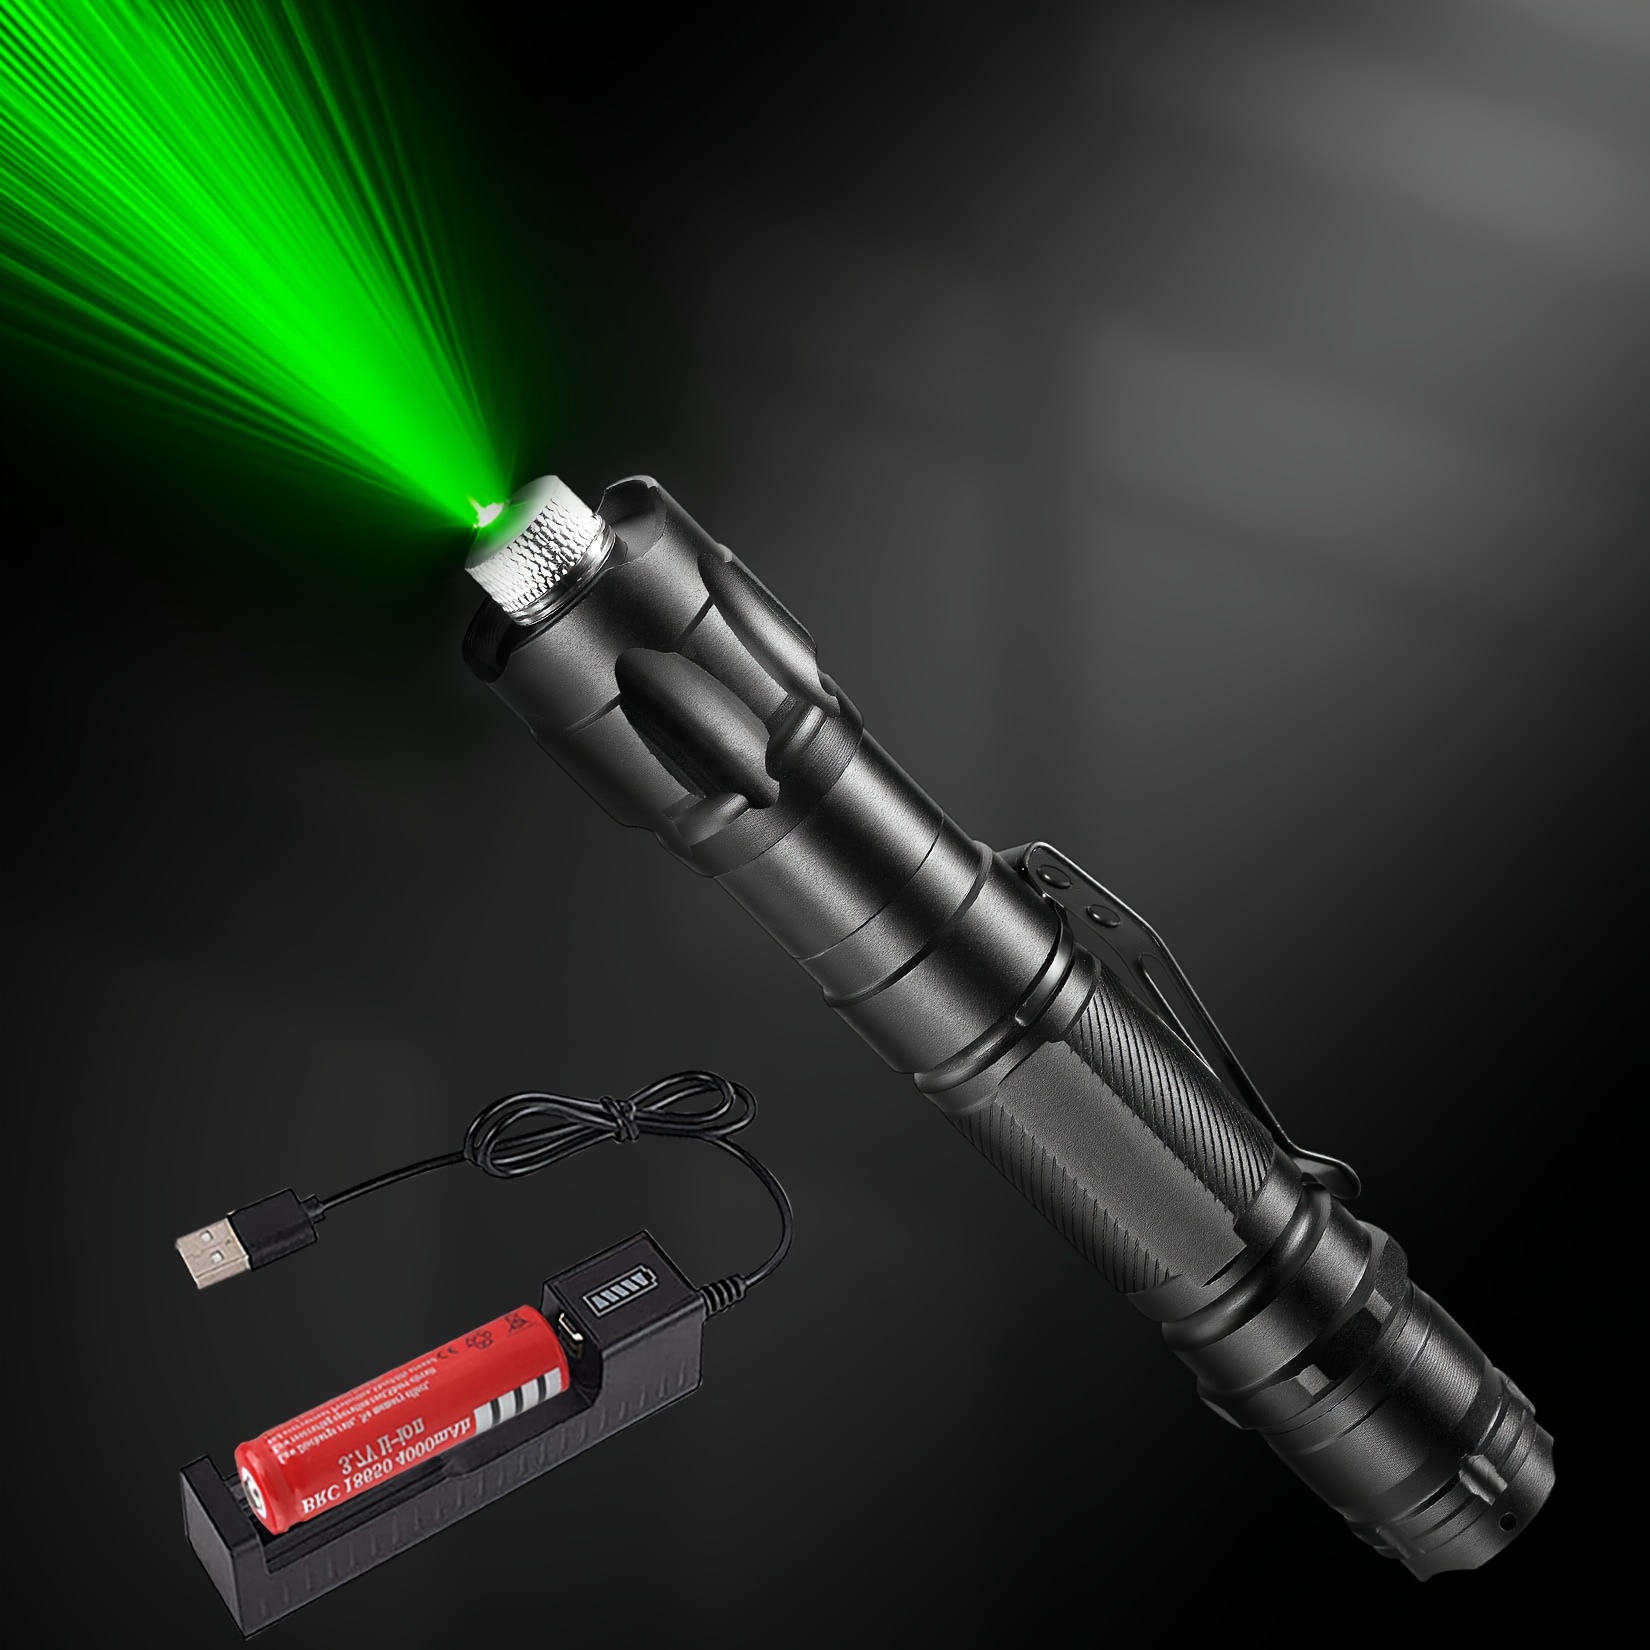 Pointeur laser vert rechargeable longue portée, stylo pointeur